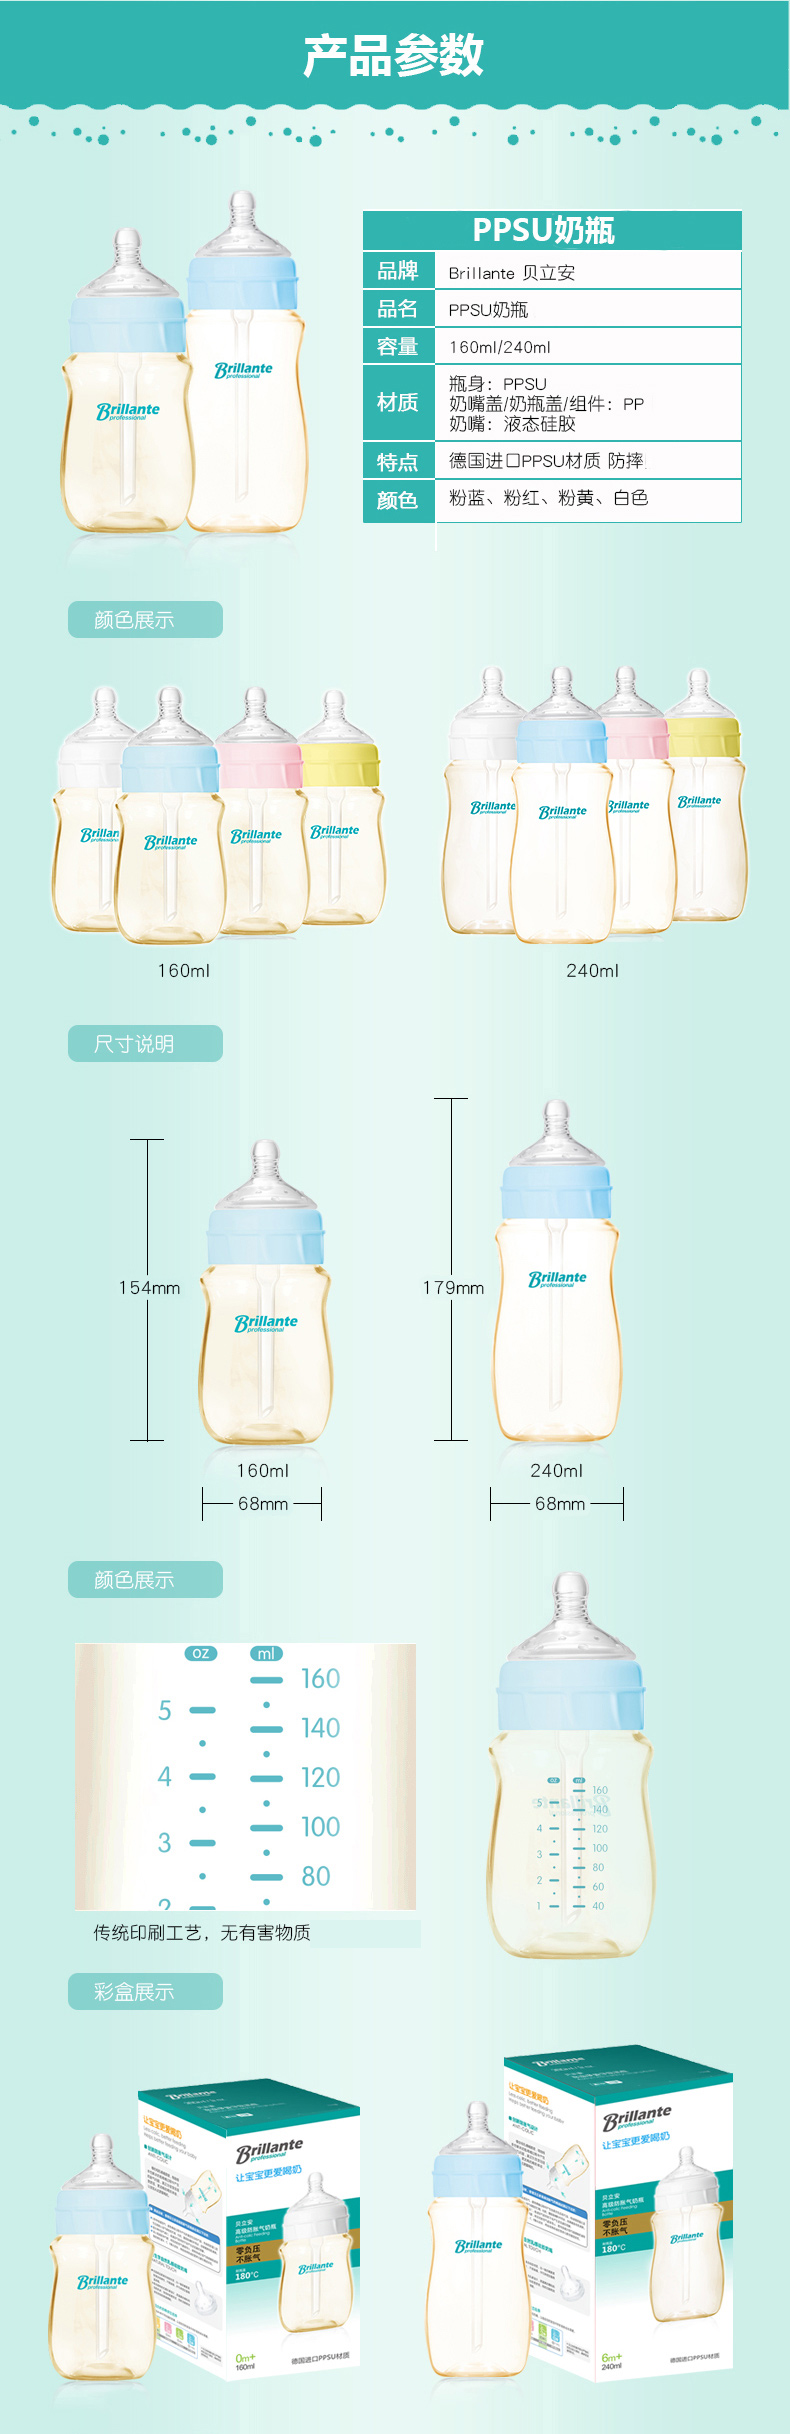 贝立安（Brillante）高级防胀气奶瓶（PPSU-160ml) BYP29